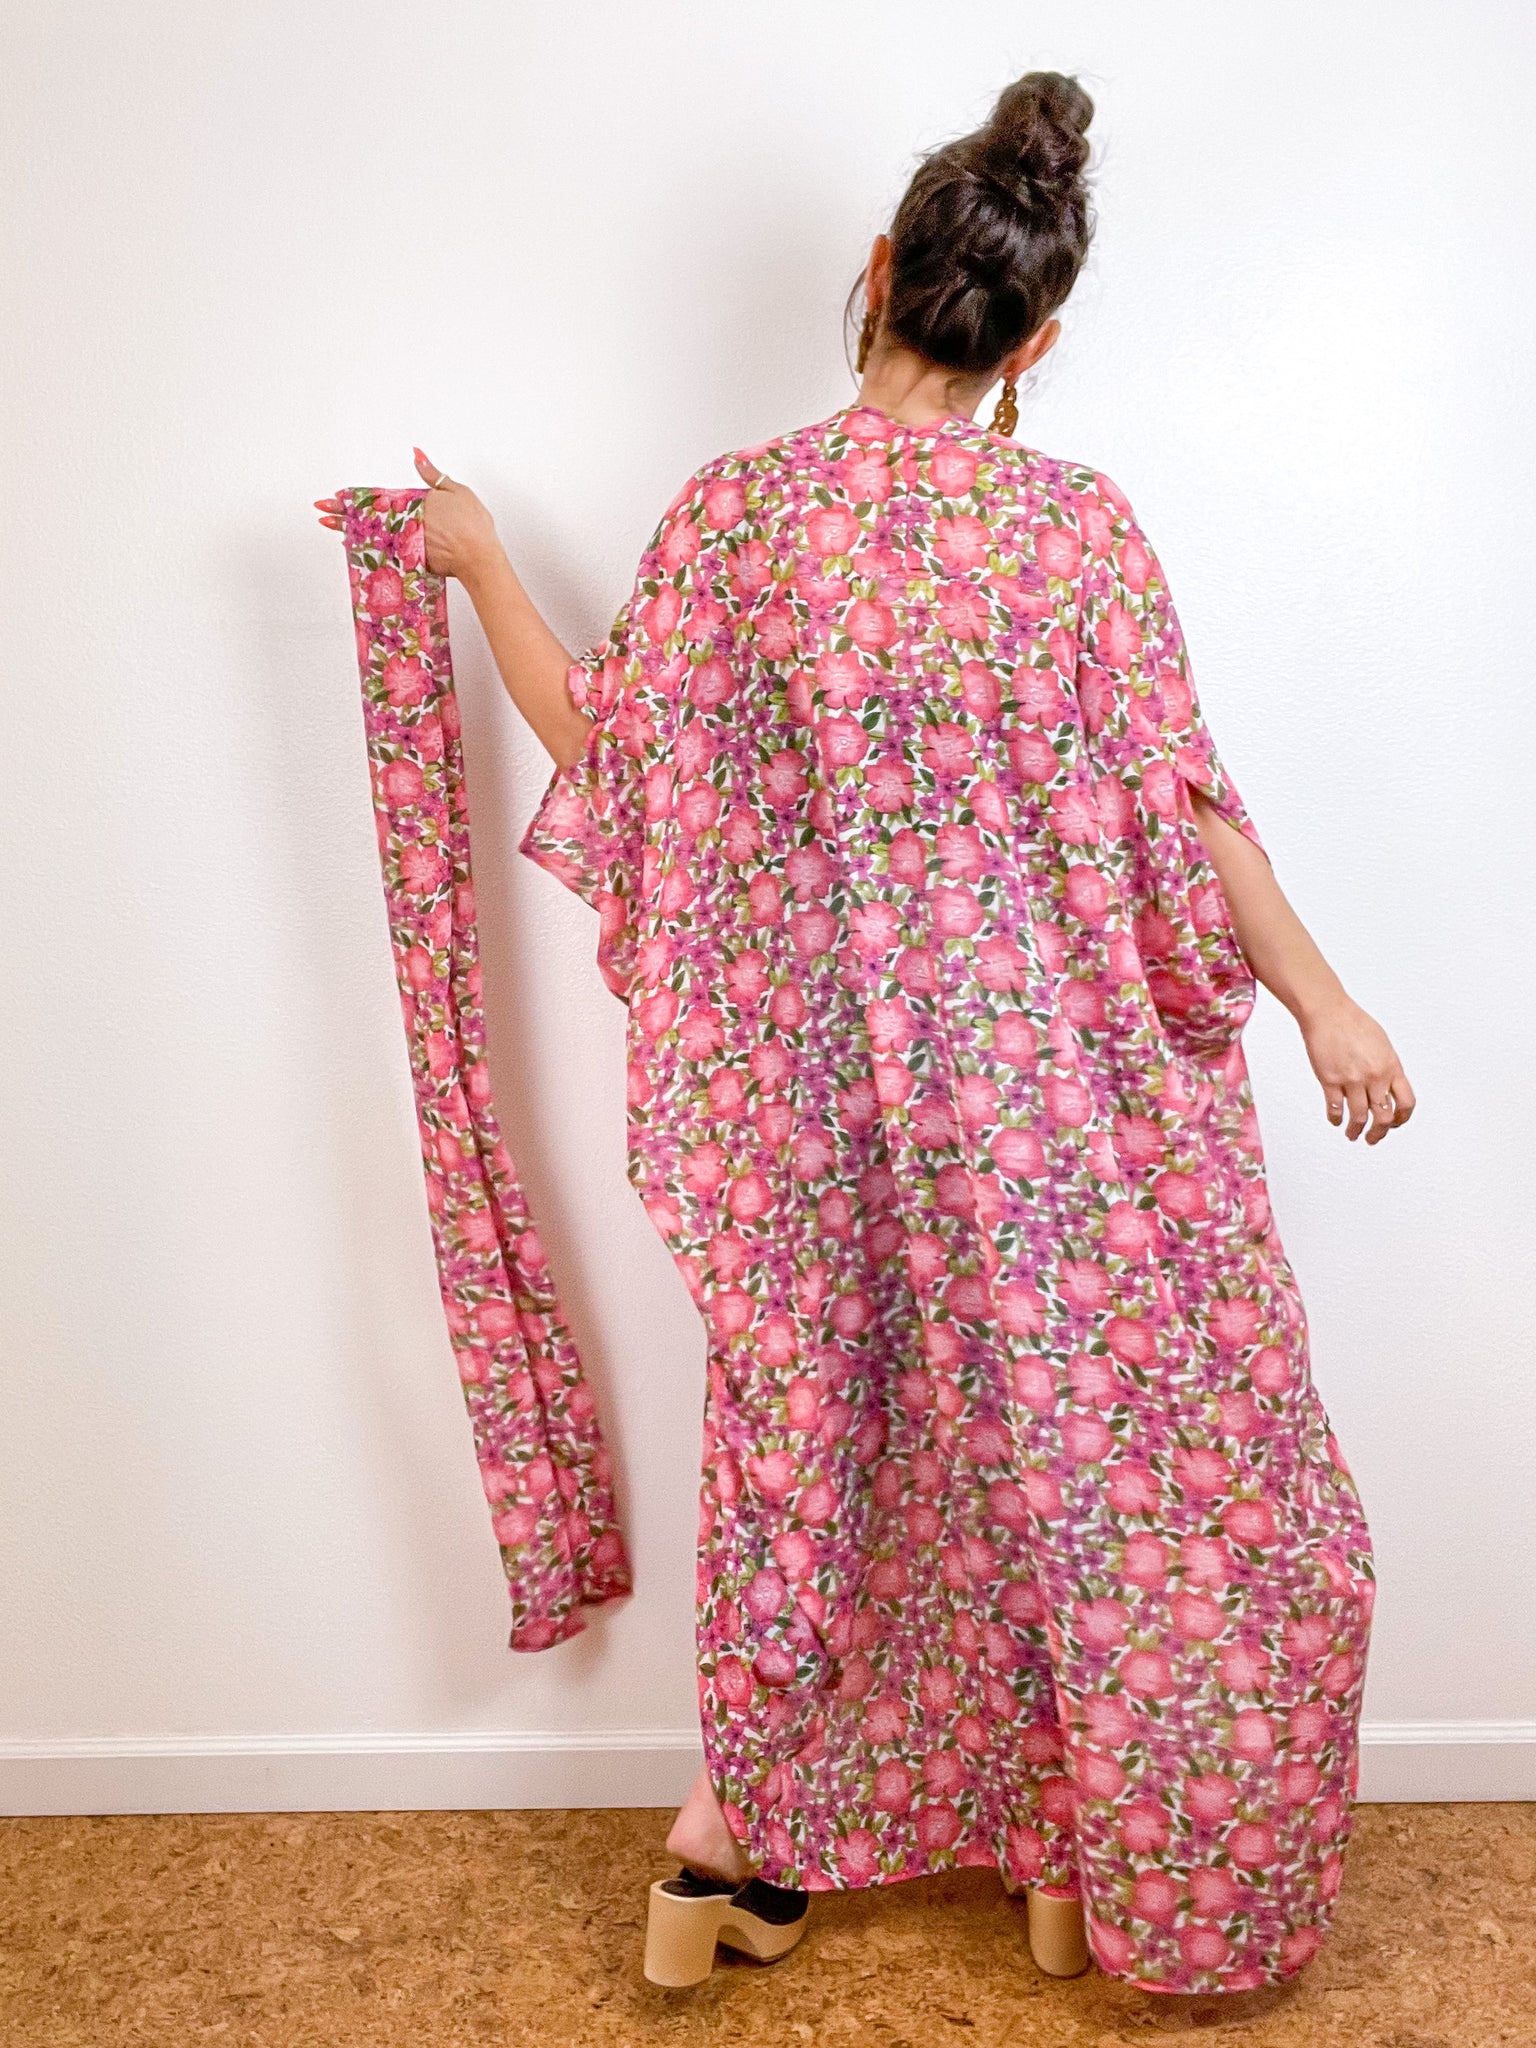 Print High Low Kimono Pink Pansy Floral Chiffon